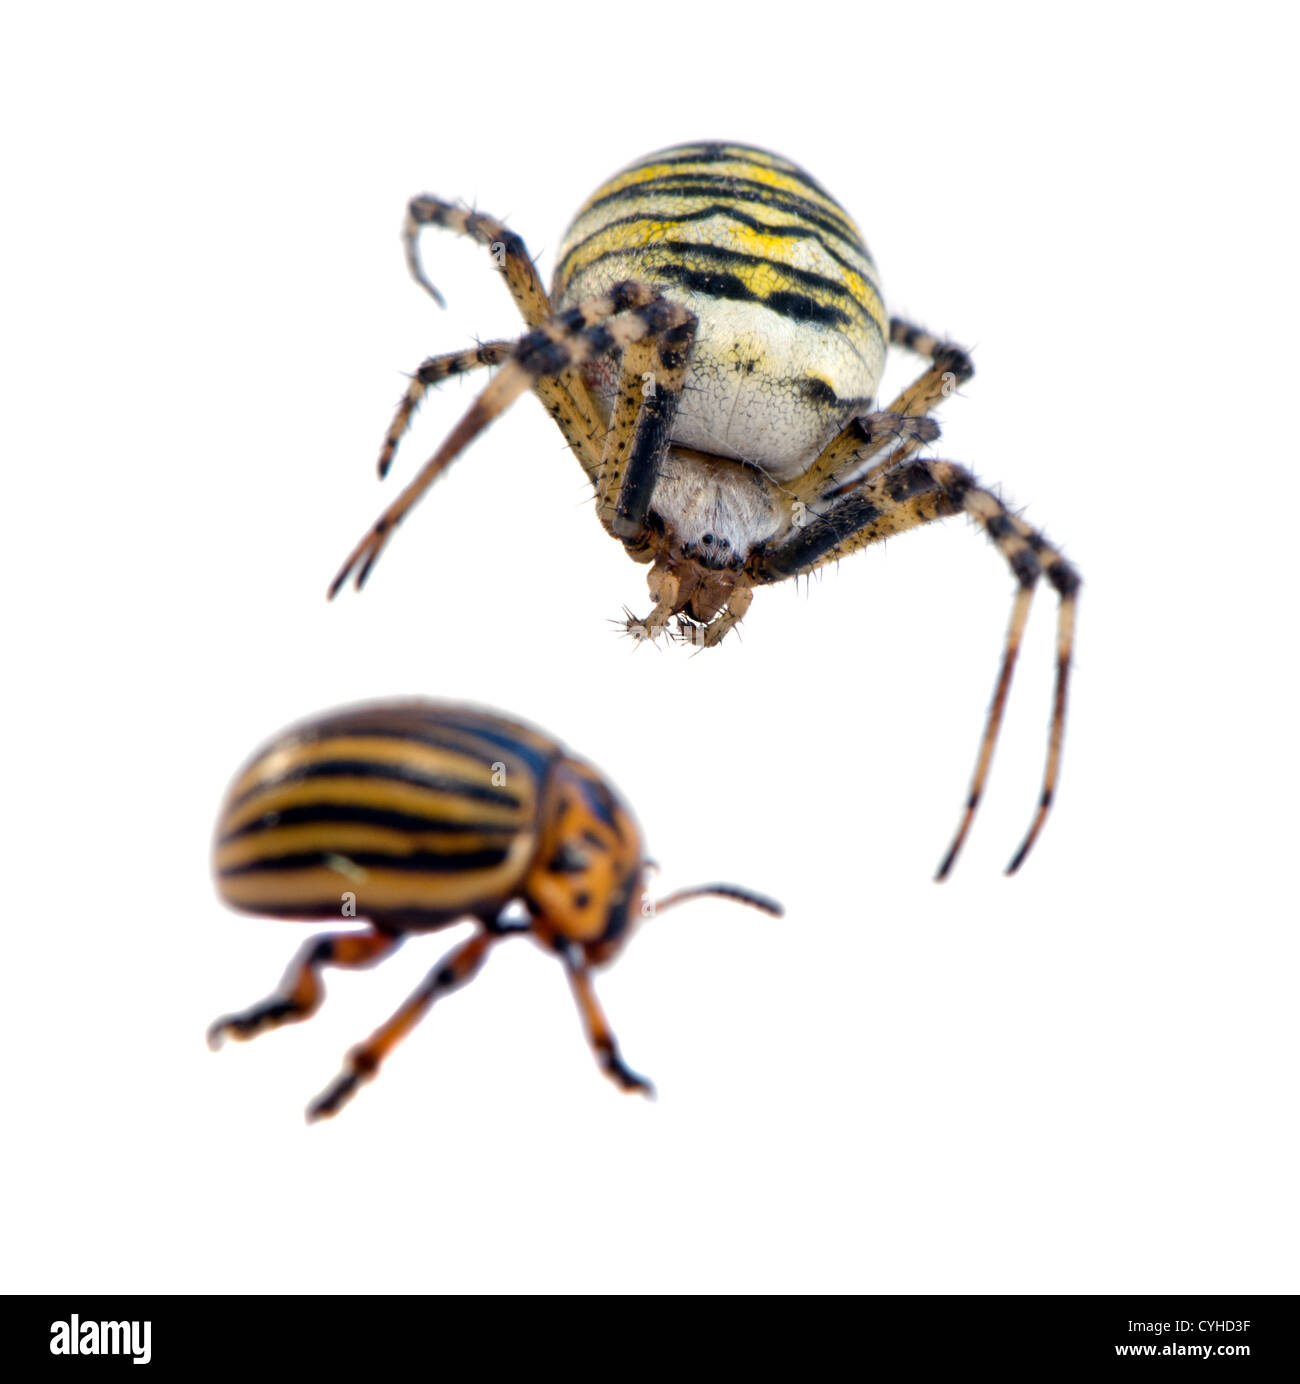 Il Colorado potato beetle Leptinotarsa decemlineata preda e wasp spider Argiope bruennichi predatore isolato su sfondo bianco Foto Stock